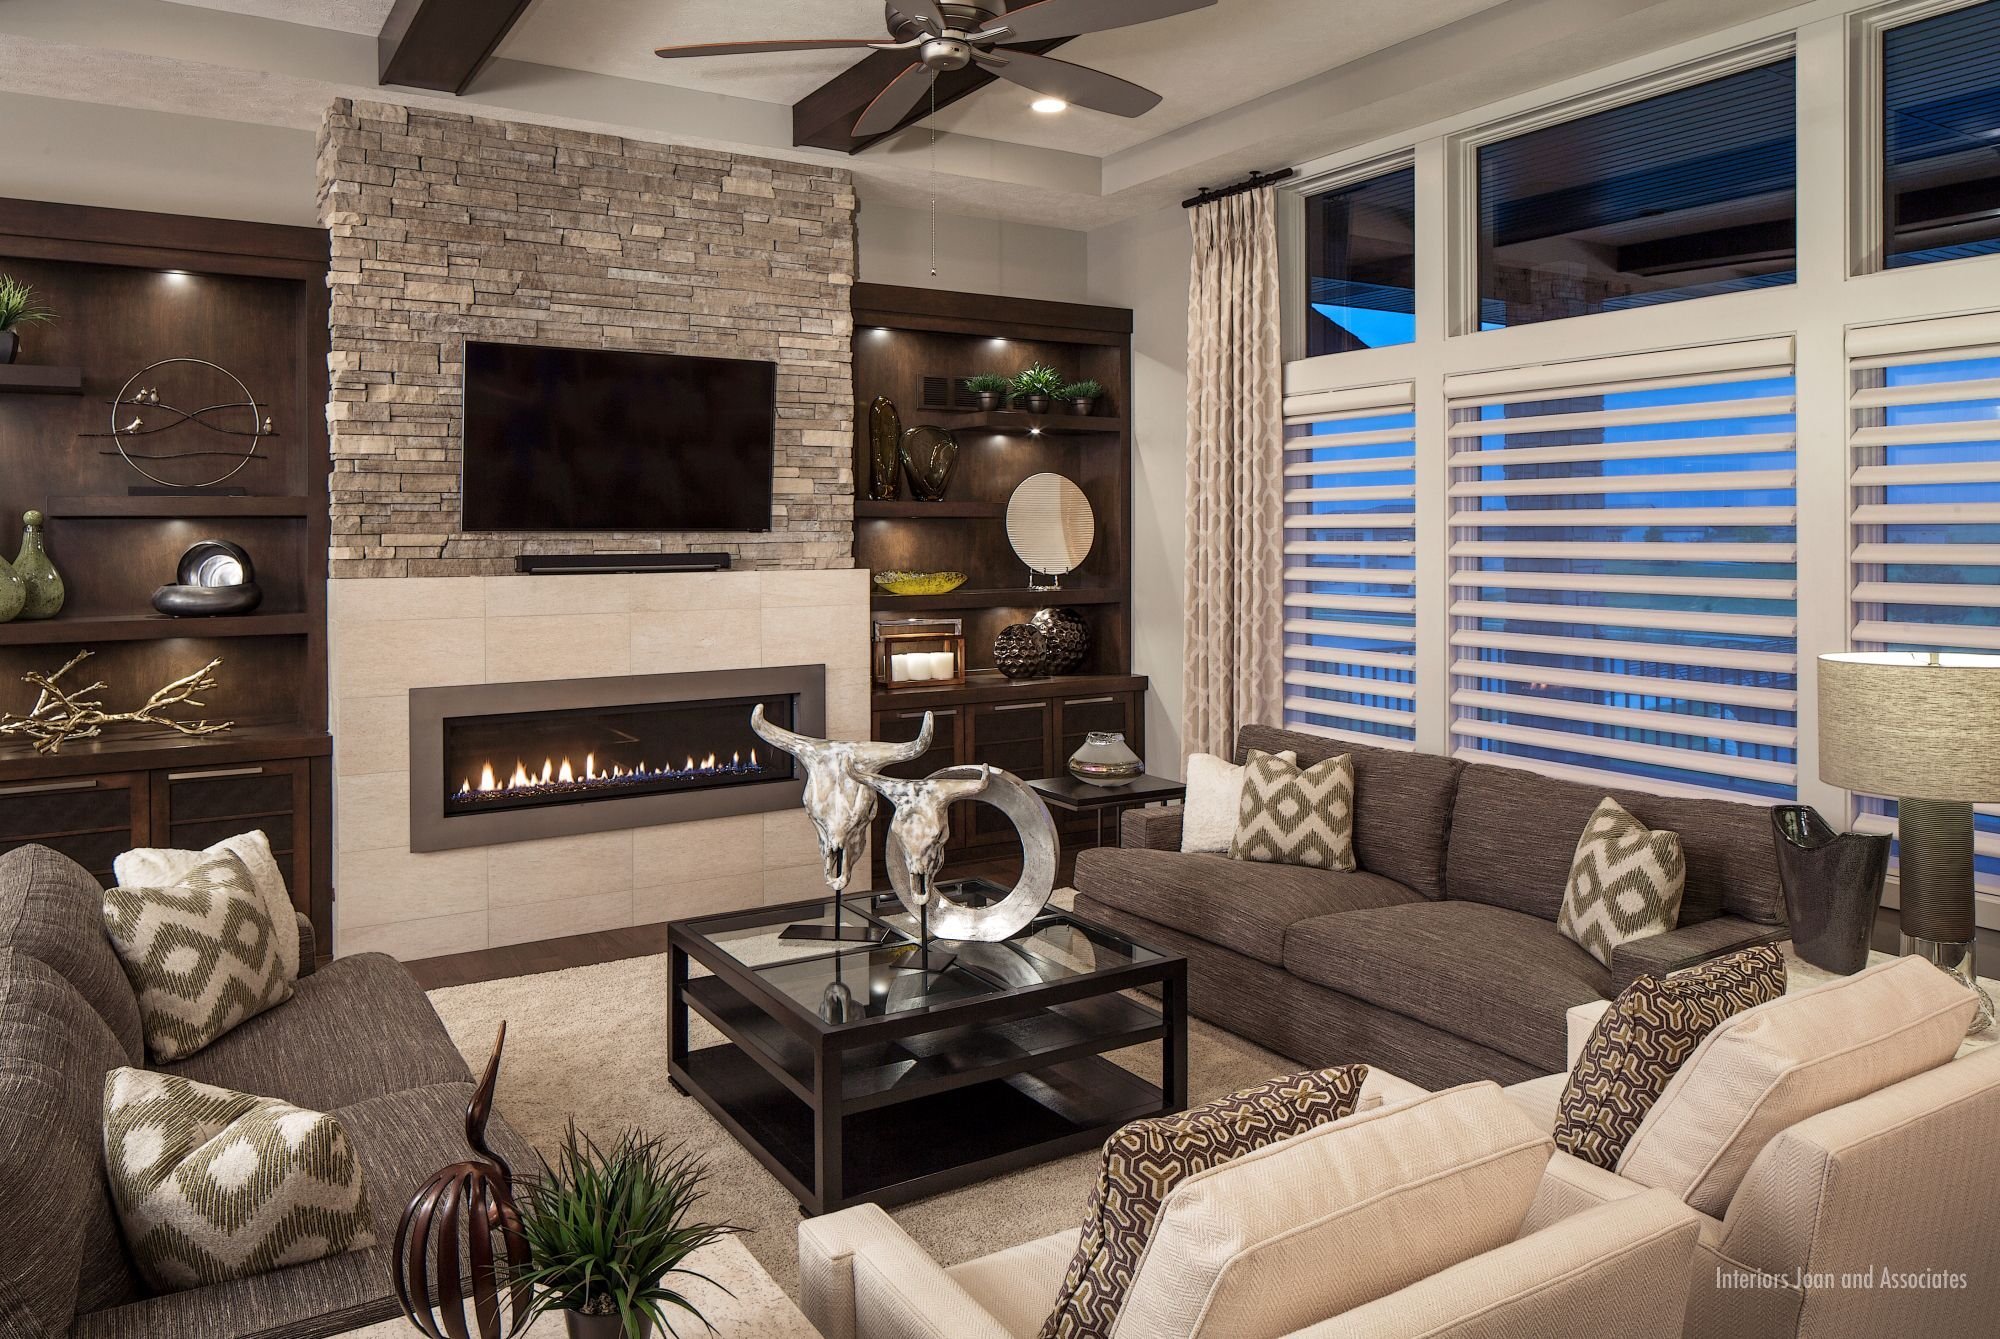 Телевизор и камин в гостиной комнате — советы по дизайну интерьера